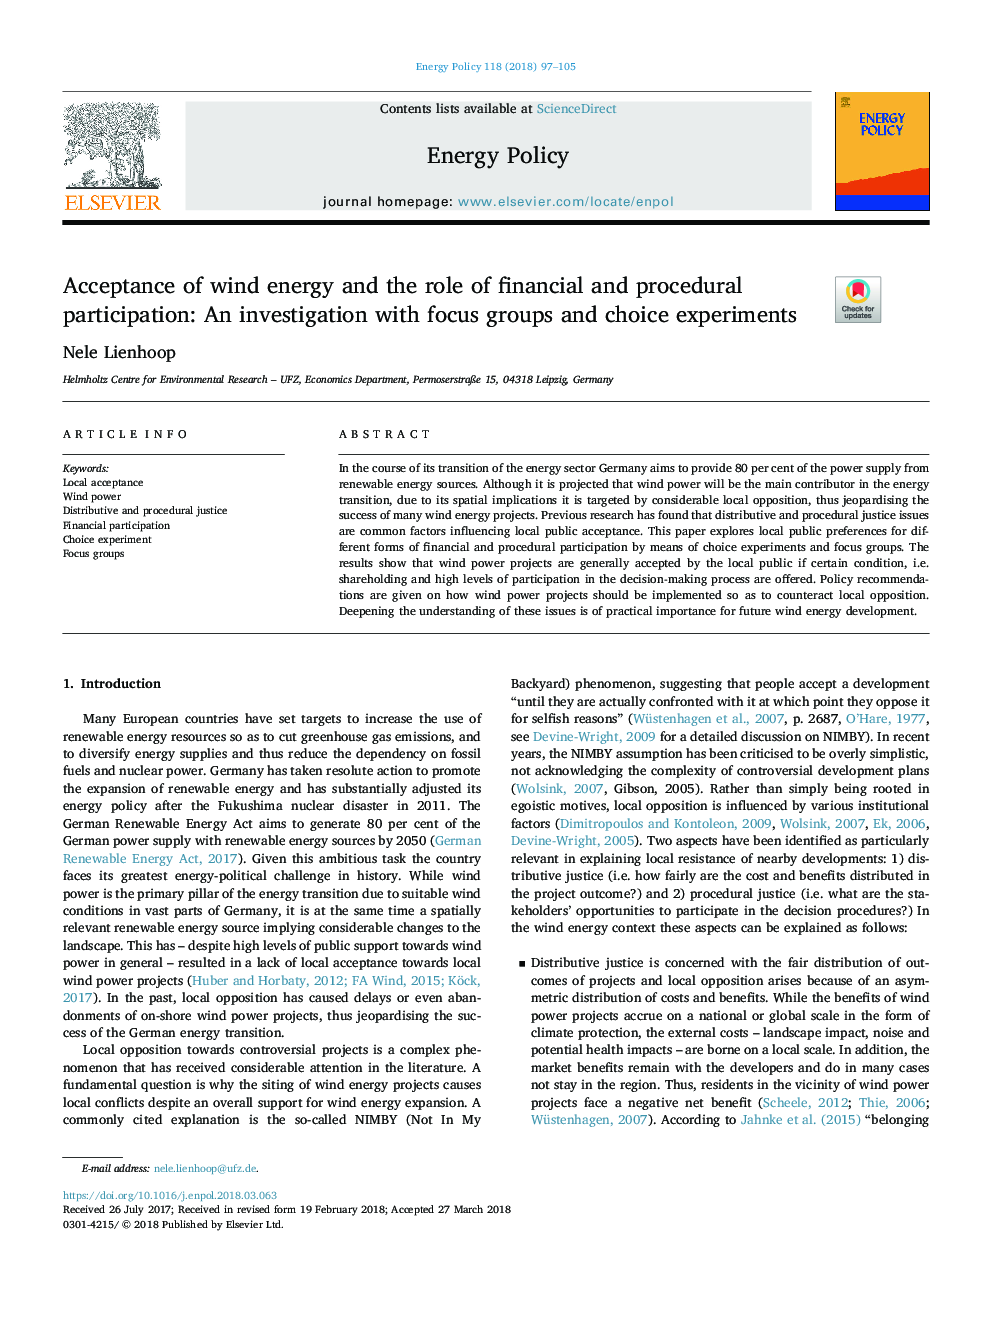 پذیرش انرژی باد و نقش مشارکت مالی و رویه ای: تحقیق با گروه های تمرکز و آزمایش های انتخابی 